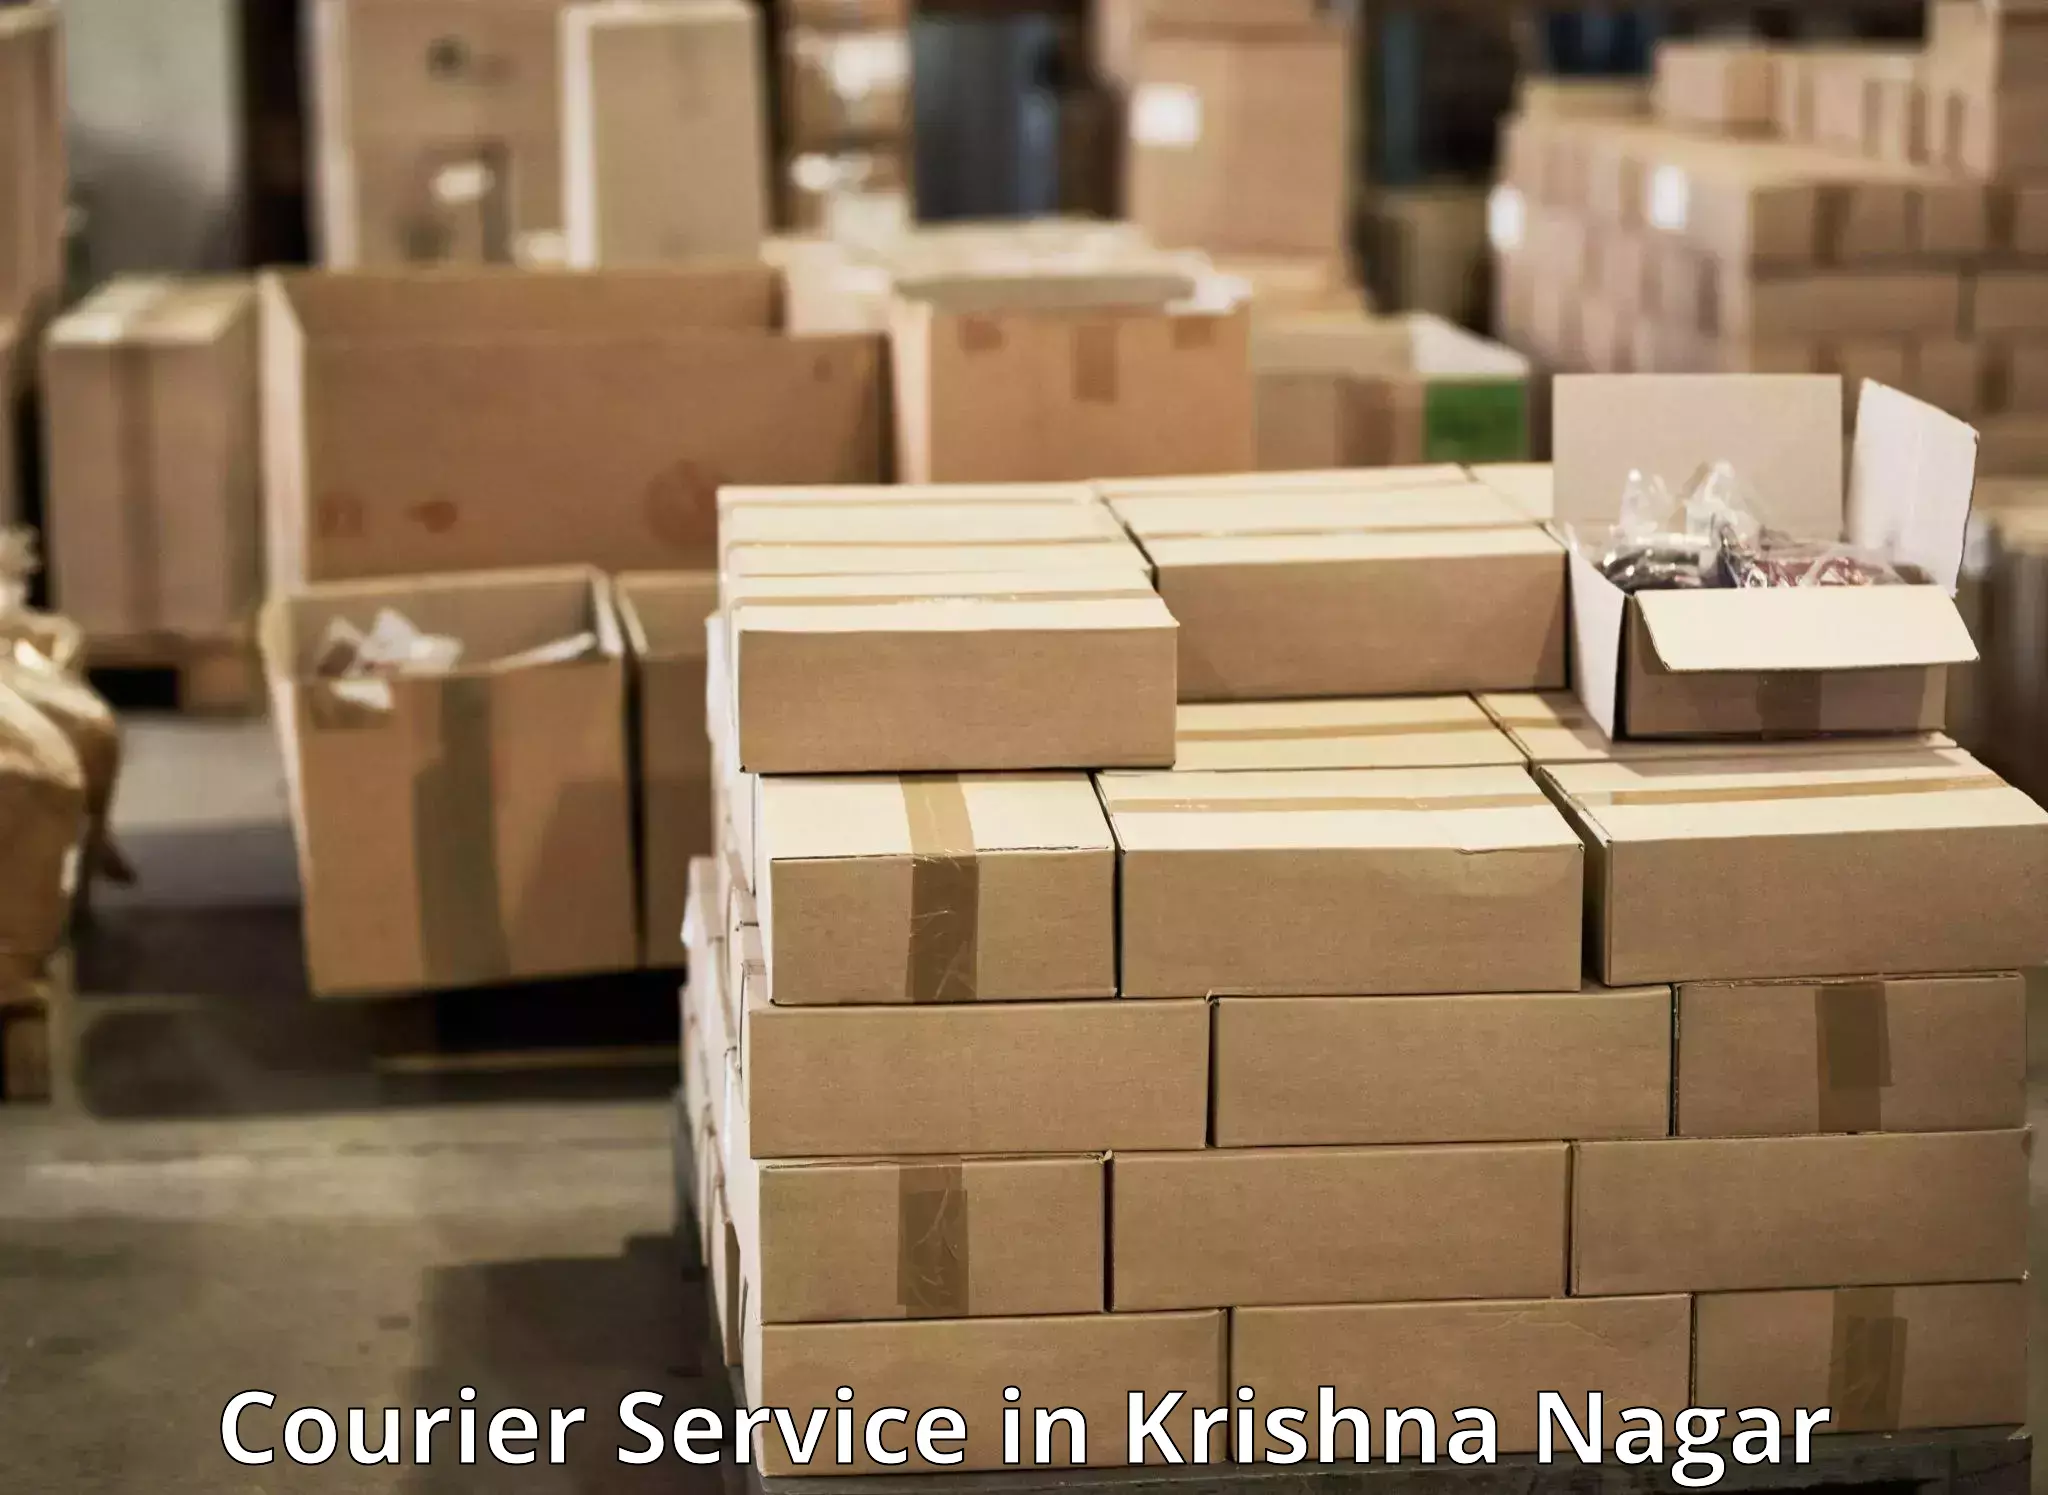 Easy return solutions in Krishna Nagar